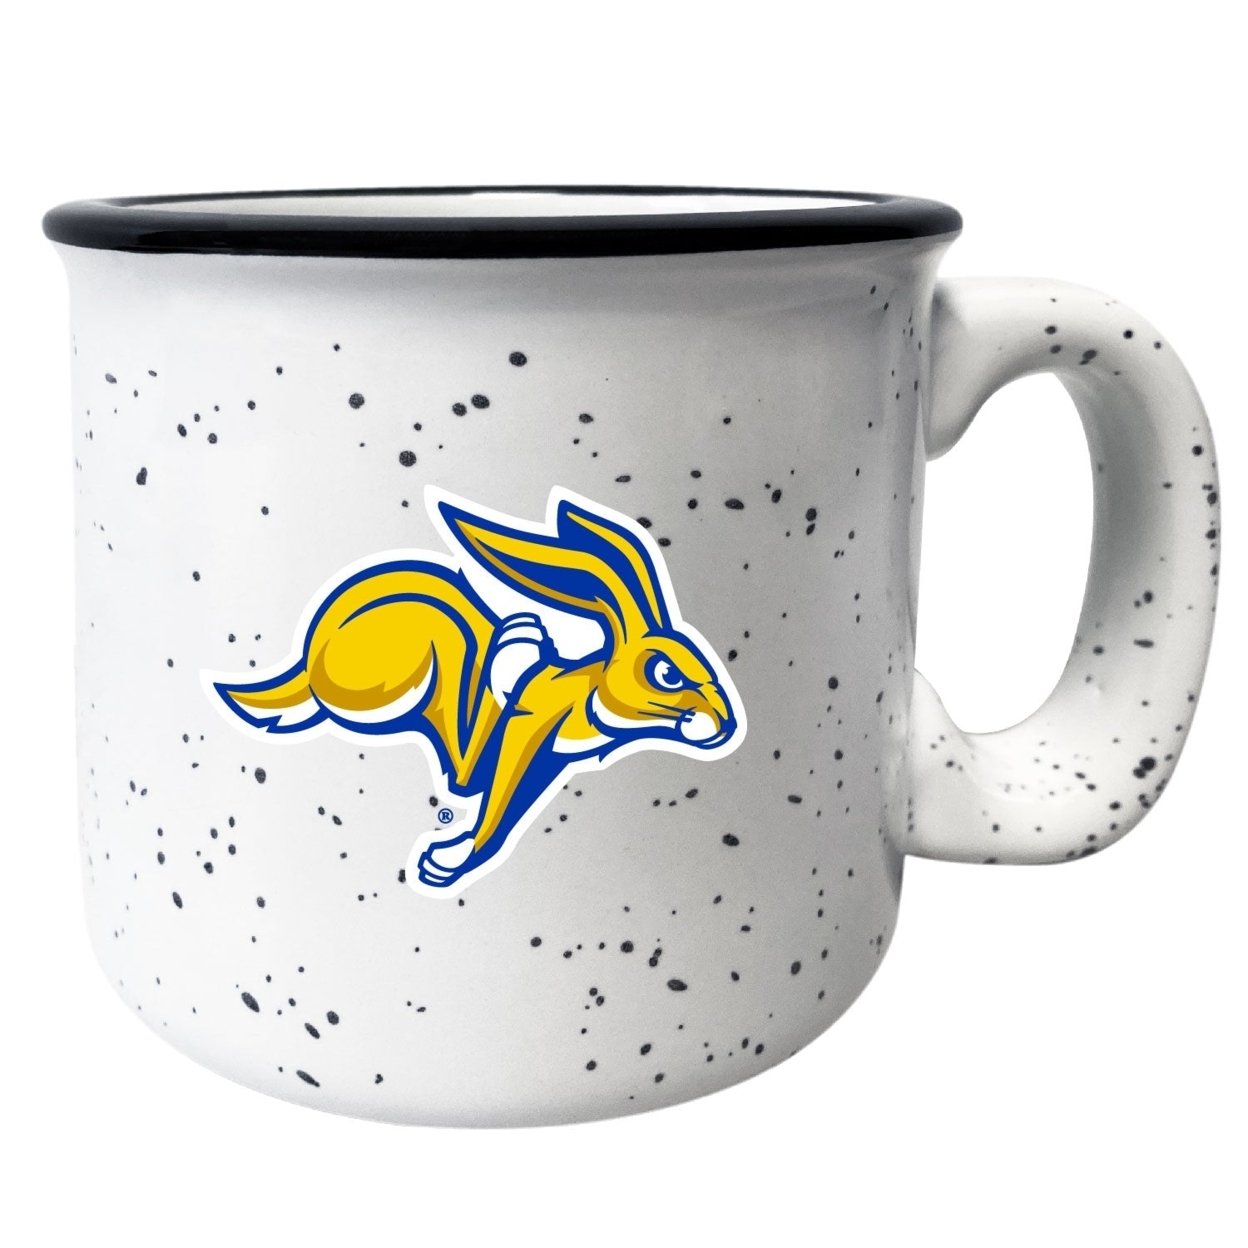 South Dakota Jackrabbits Speckled Ceramic Camper Coffee Mug - Choose Your Color - Navy